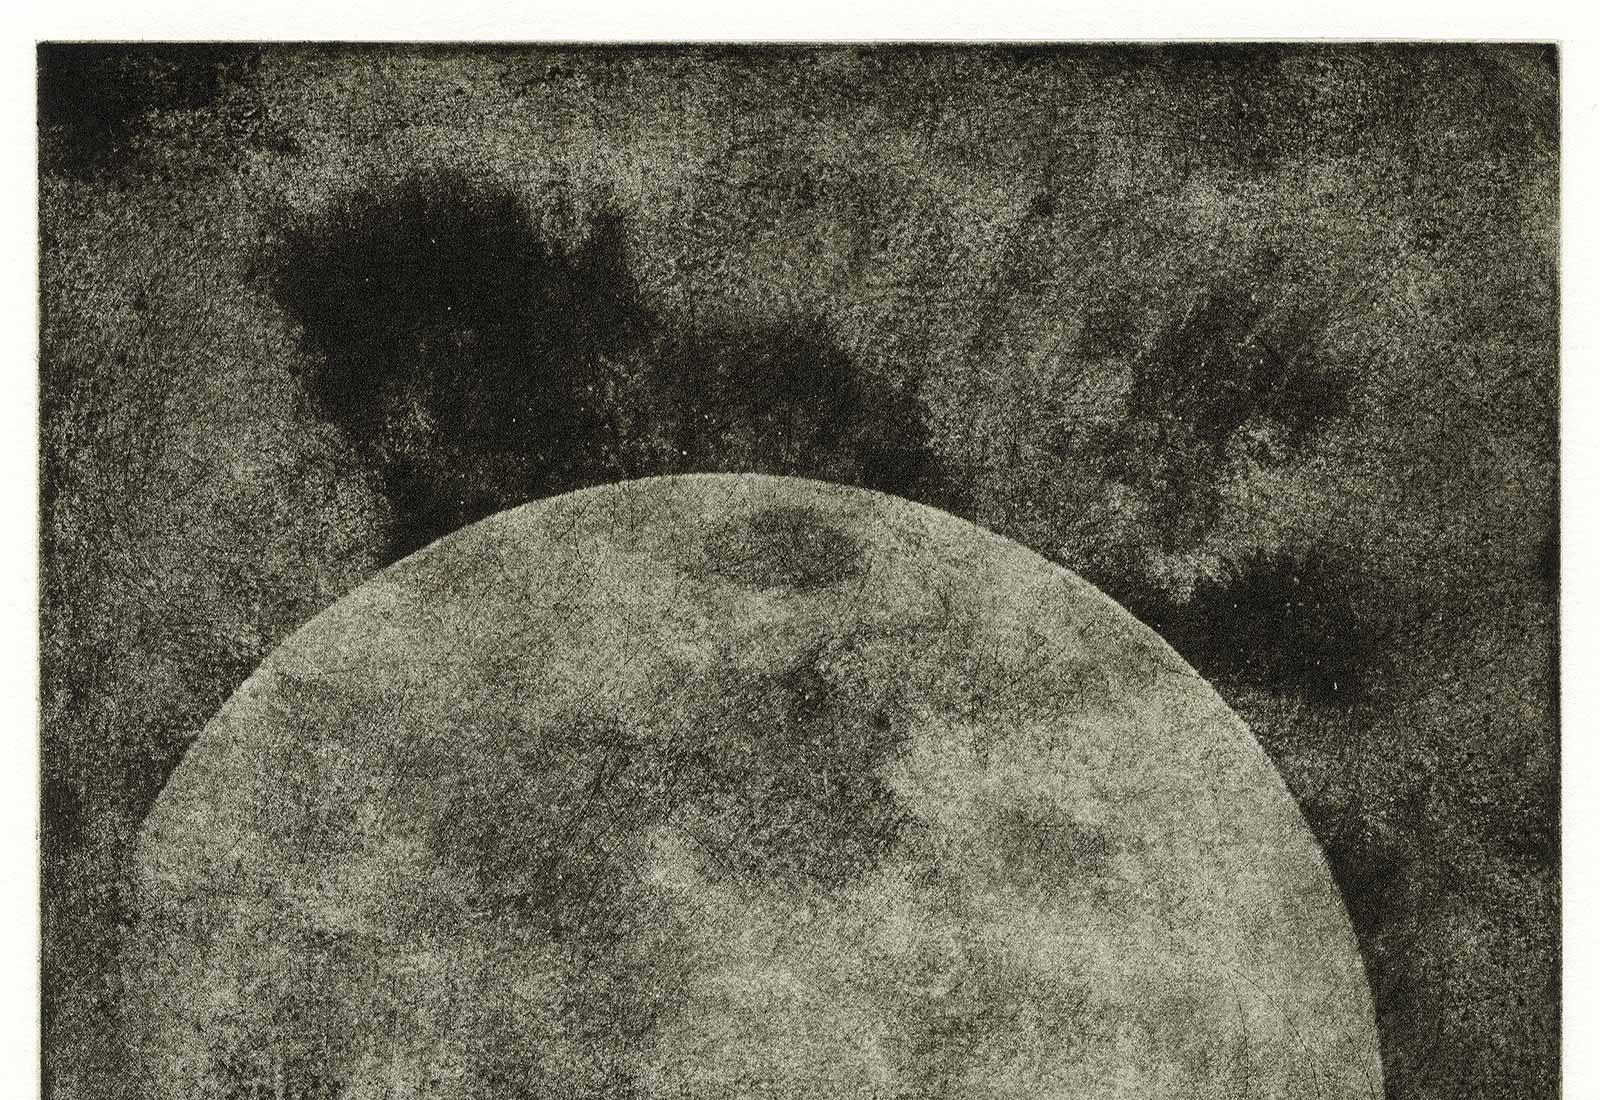 Moon ( aus der Lunar-Serie des Künstlers) – Photograph von Ted Kincaid